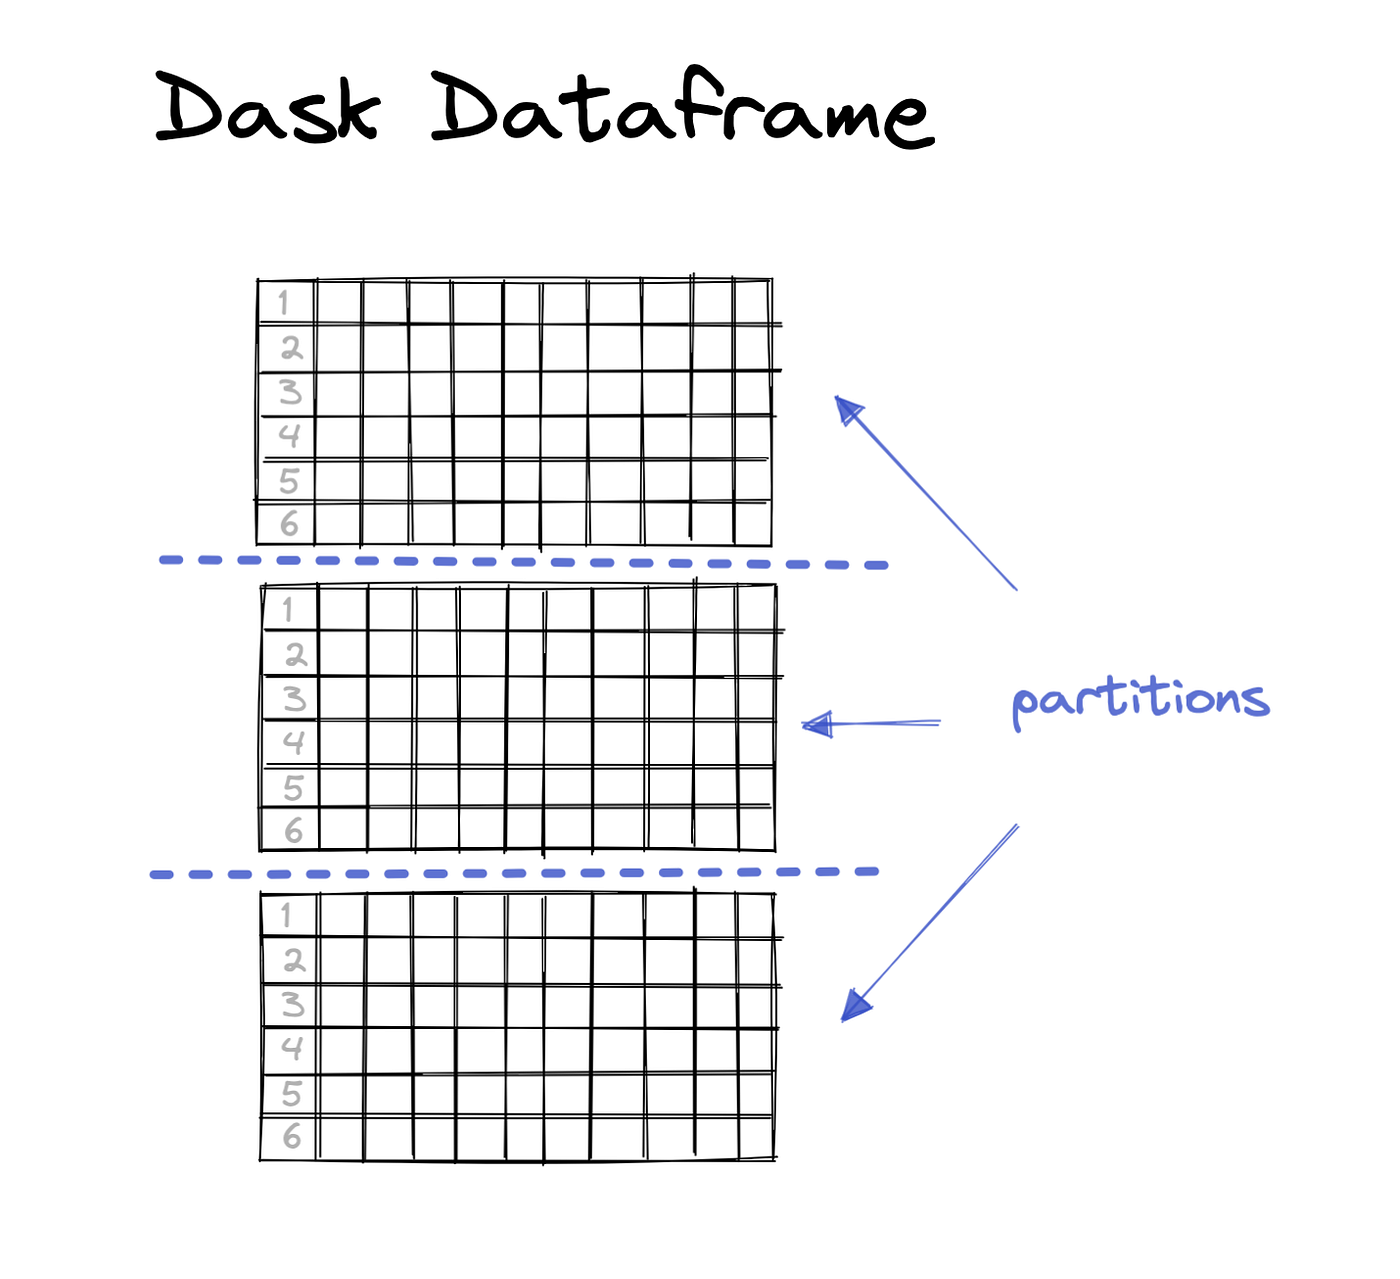 一个大的DASK数据帧分为3个较小的分区